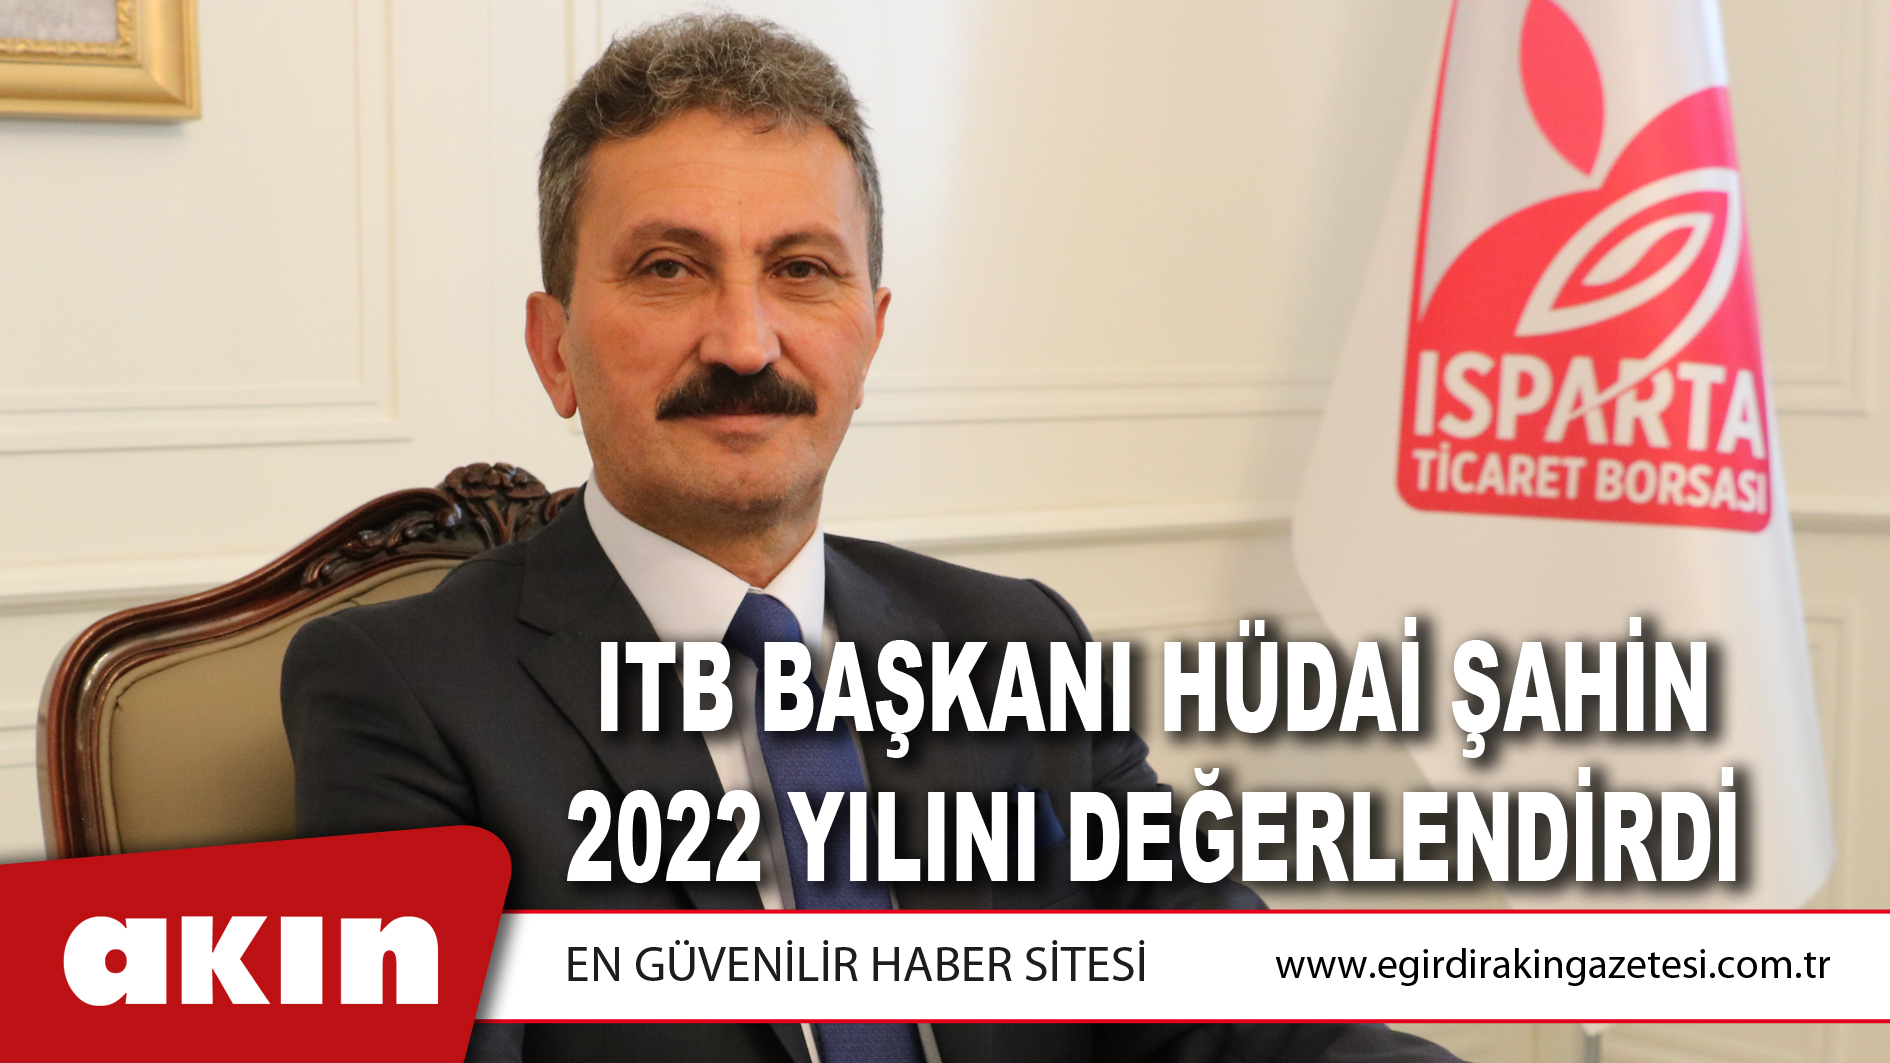 ITB Başkanı Hüdai Şahin 2022 Yılını Değerlendirdi